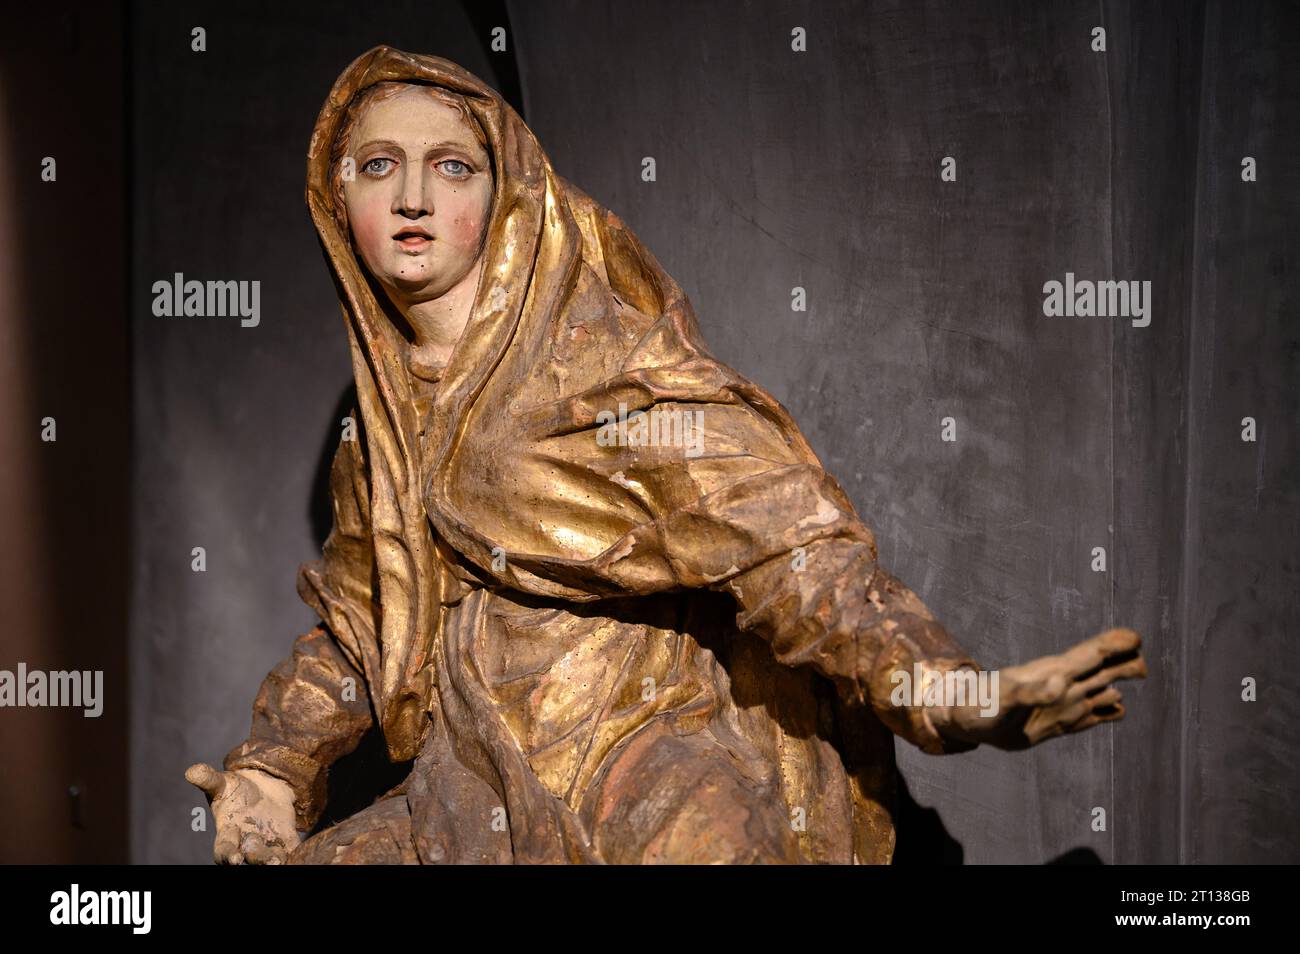 La Vierge Marie. La première moitié du 18e siècle. De Hnanice, République tchèque. Actuellement au Musée diocésain de Brno. Banque D'Images